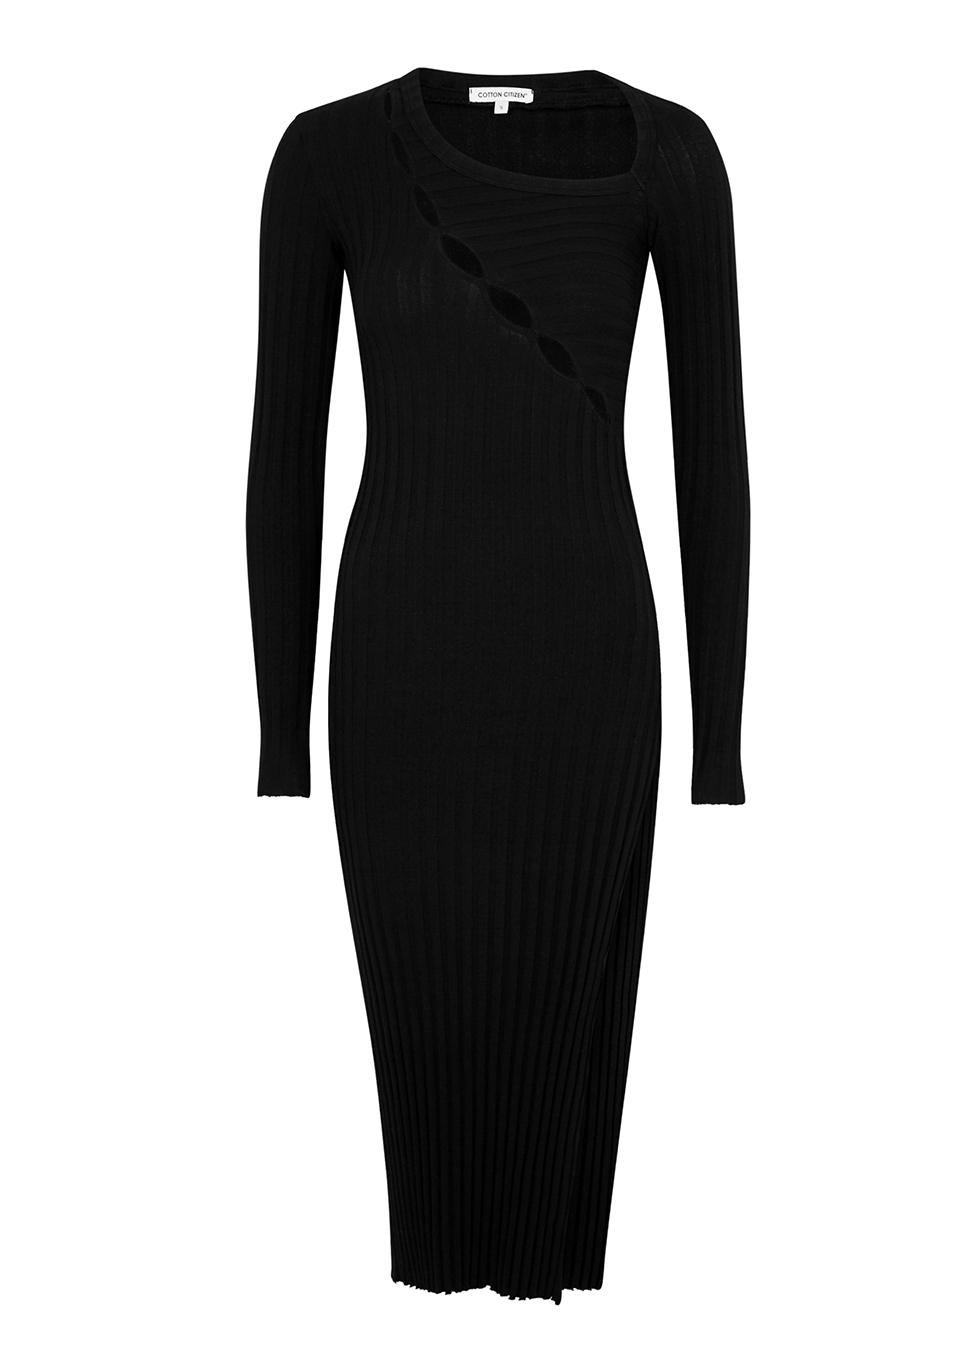 Capri black cut-out stretch-cotton dress by COTTON CITIZEN